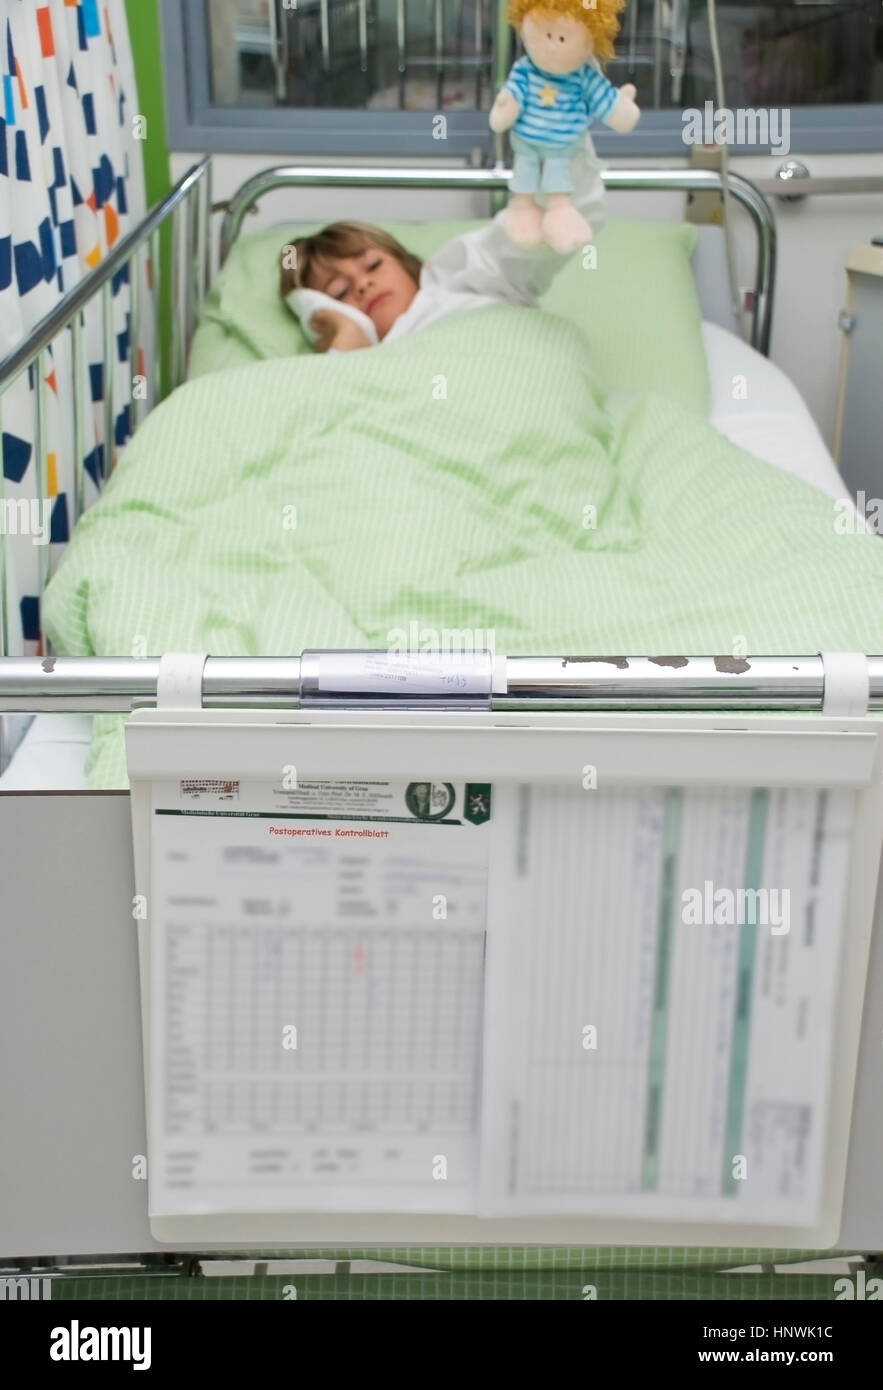 Model release, Junge, 10 Jahre, im Kinderspital - child in children hospital Stock Photo